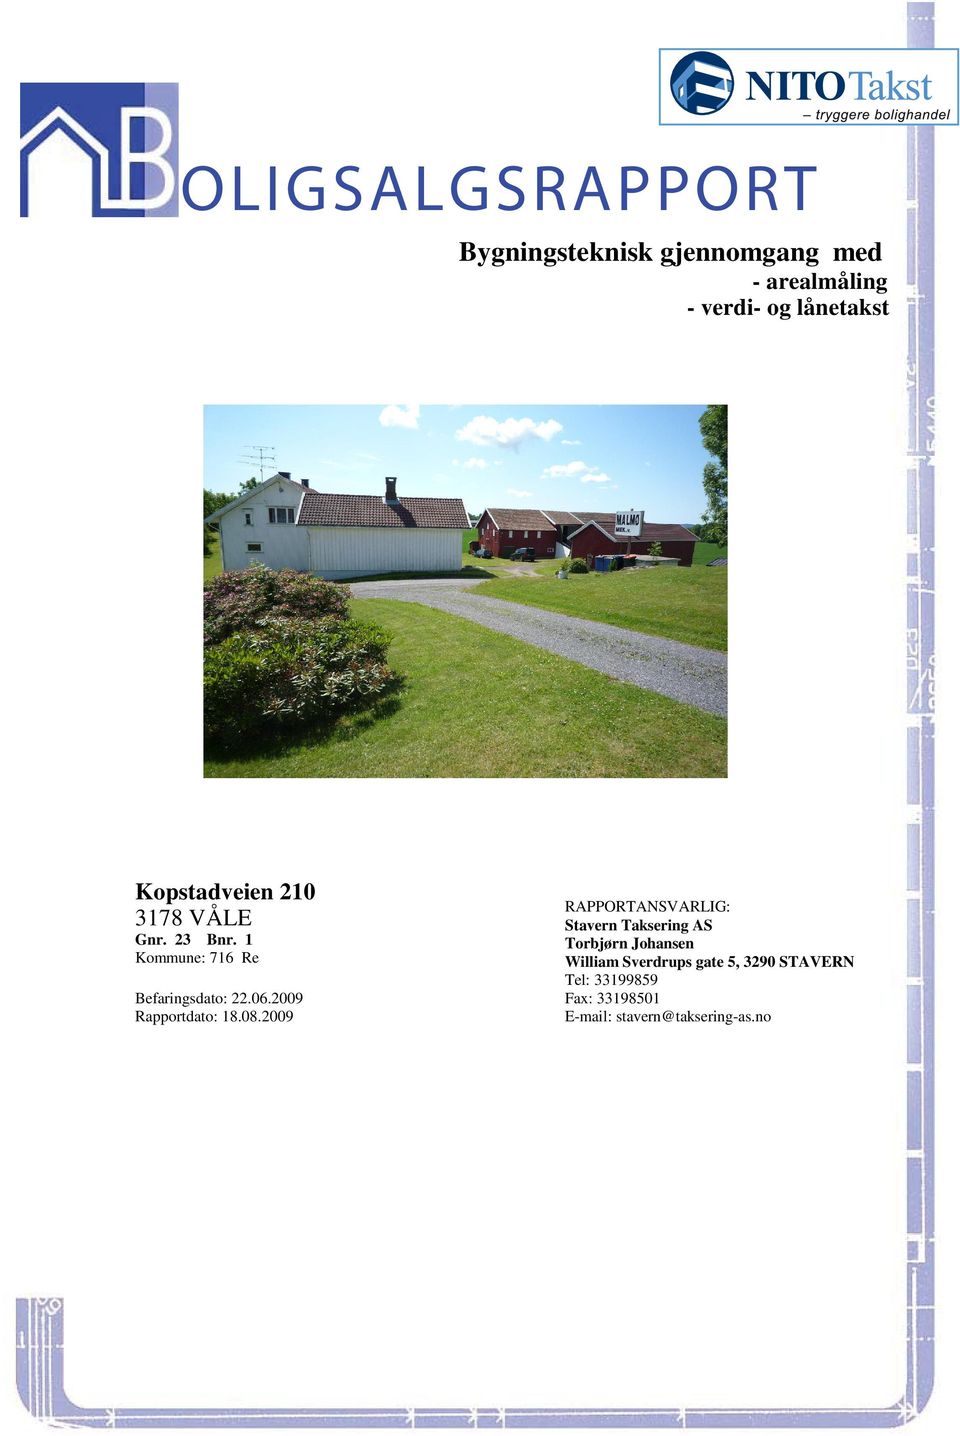 Taksering AS Gnr 23 Bnr 1 Torbjørn Johansen Kommune: 716 Re William